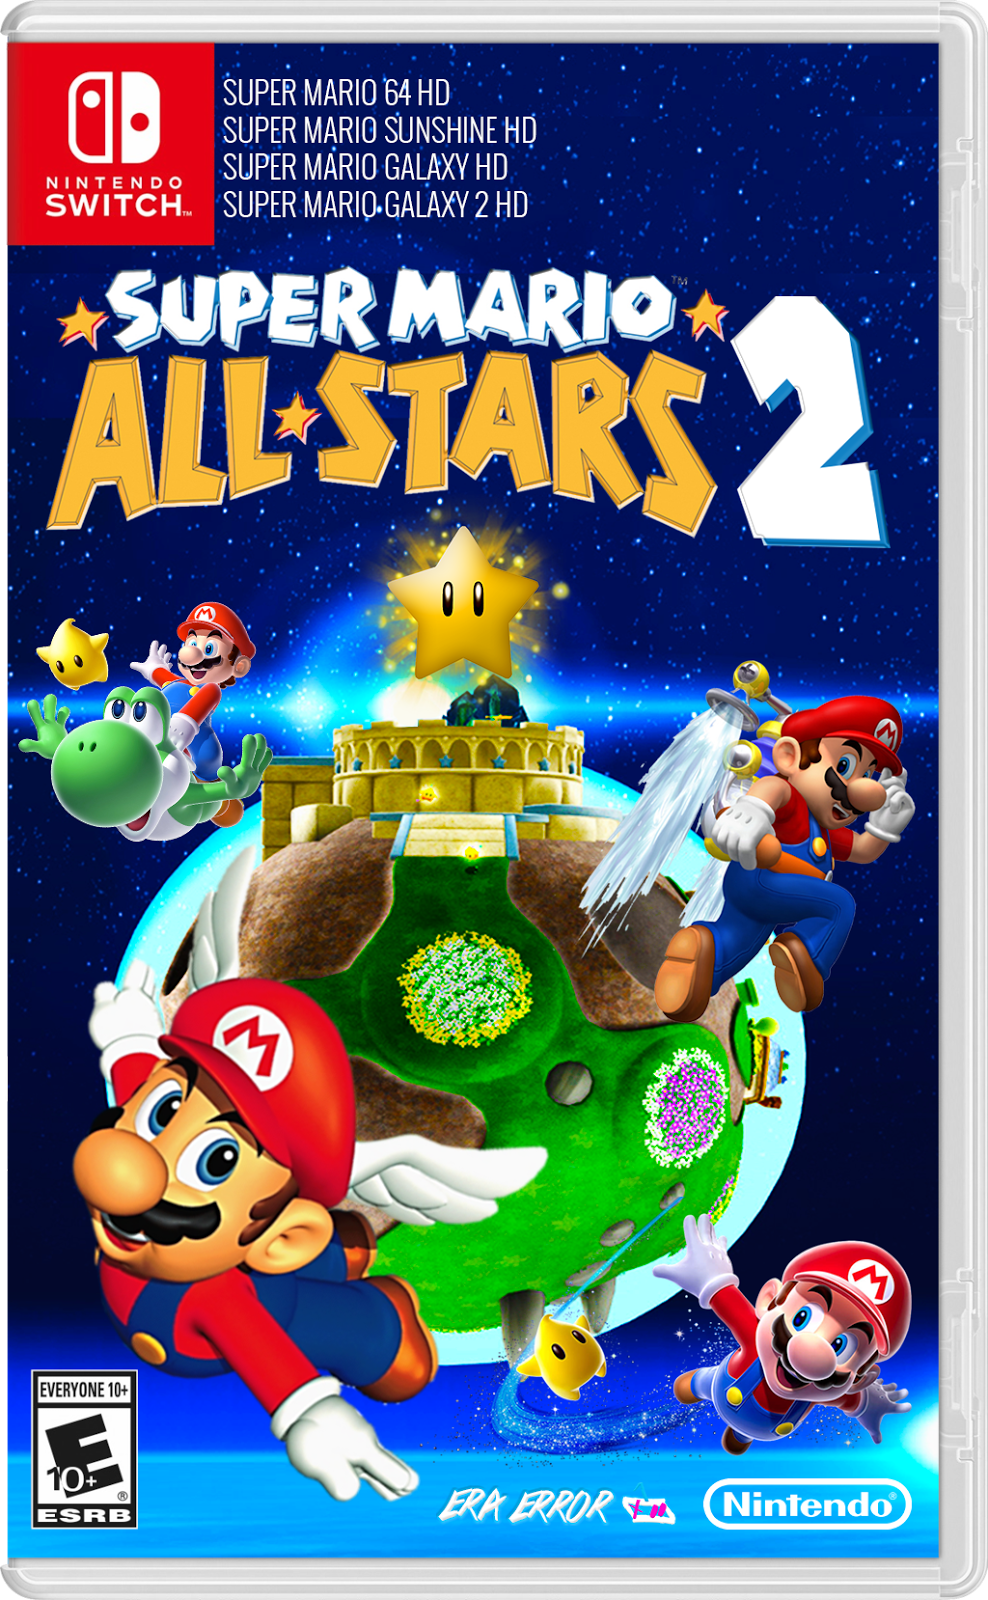 Super Mario All Stars 2 For Nintendo Switch - ERA ERROR™